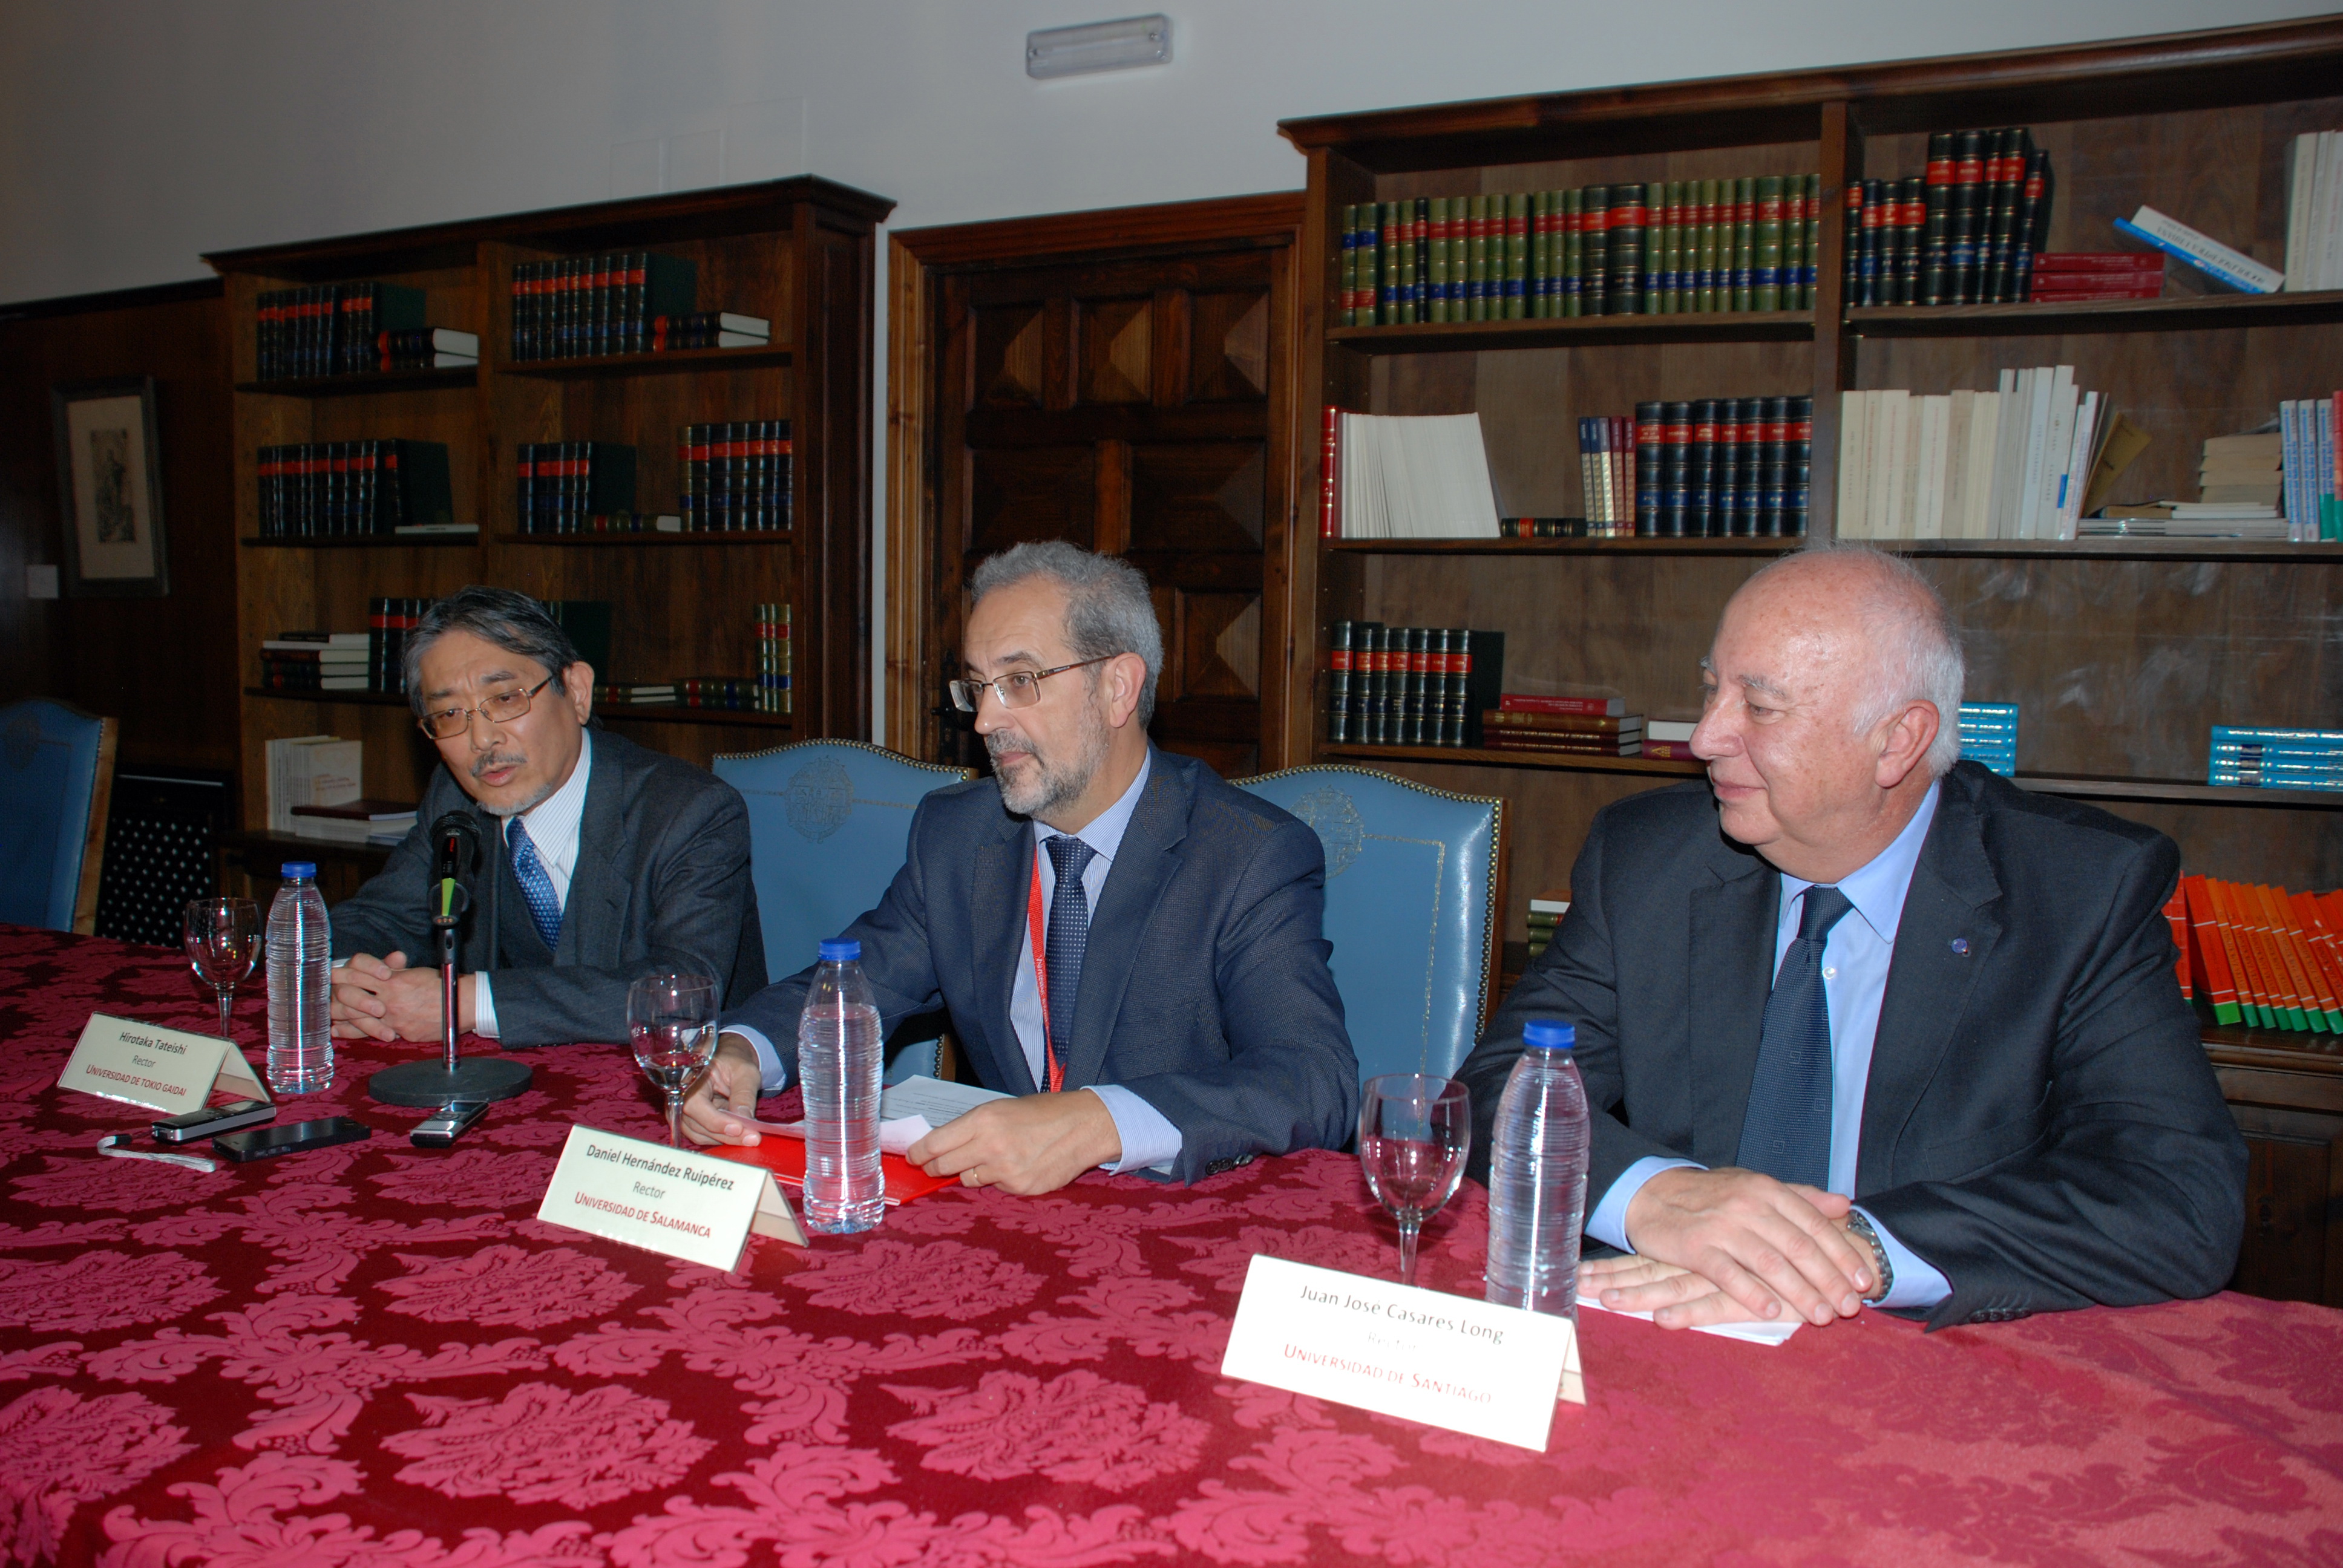 Presentación de conclusiones de la reunión de Rectores de Universidades de Japón y España